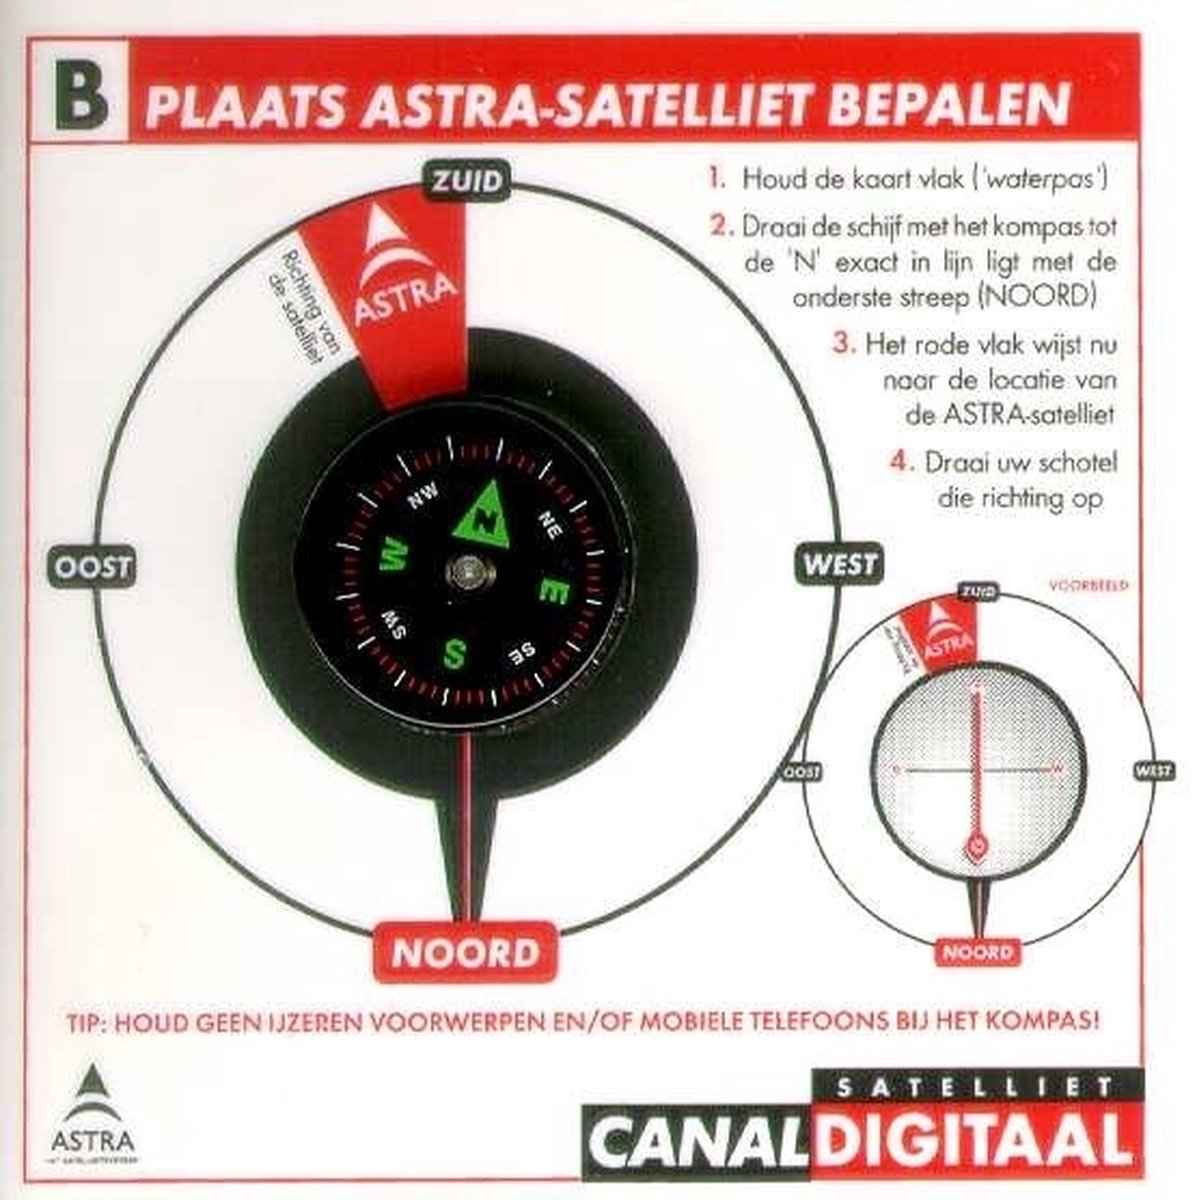 CanalDigitaal kompas - M7 / Canaldigitaal of TVV